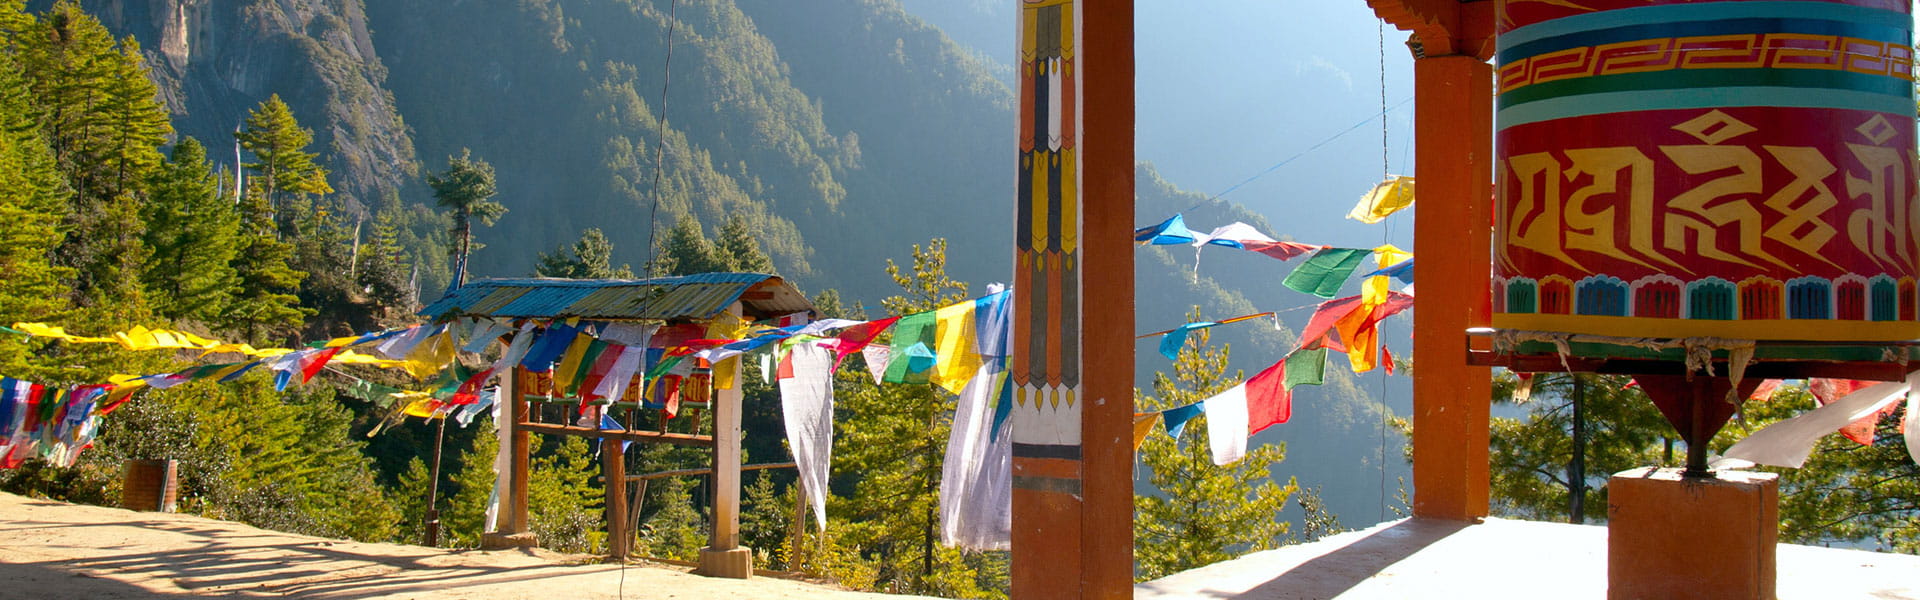 How to reach Bhutan